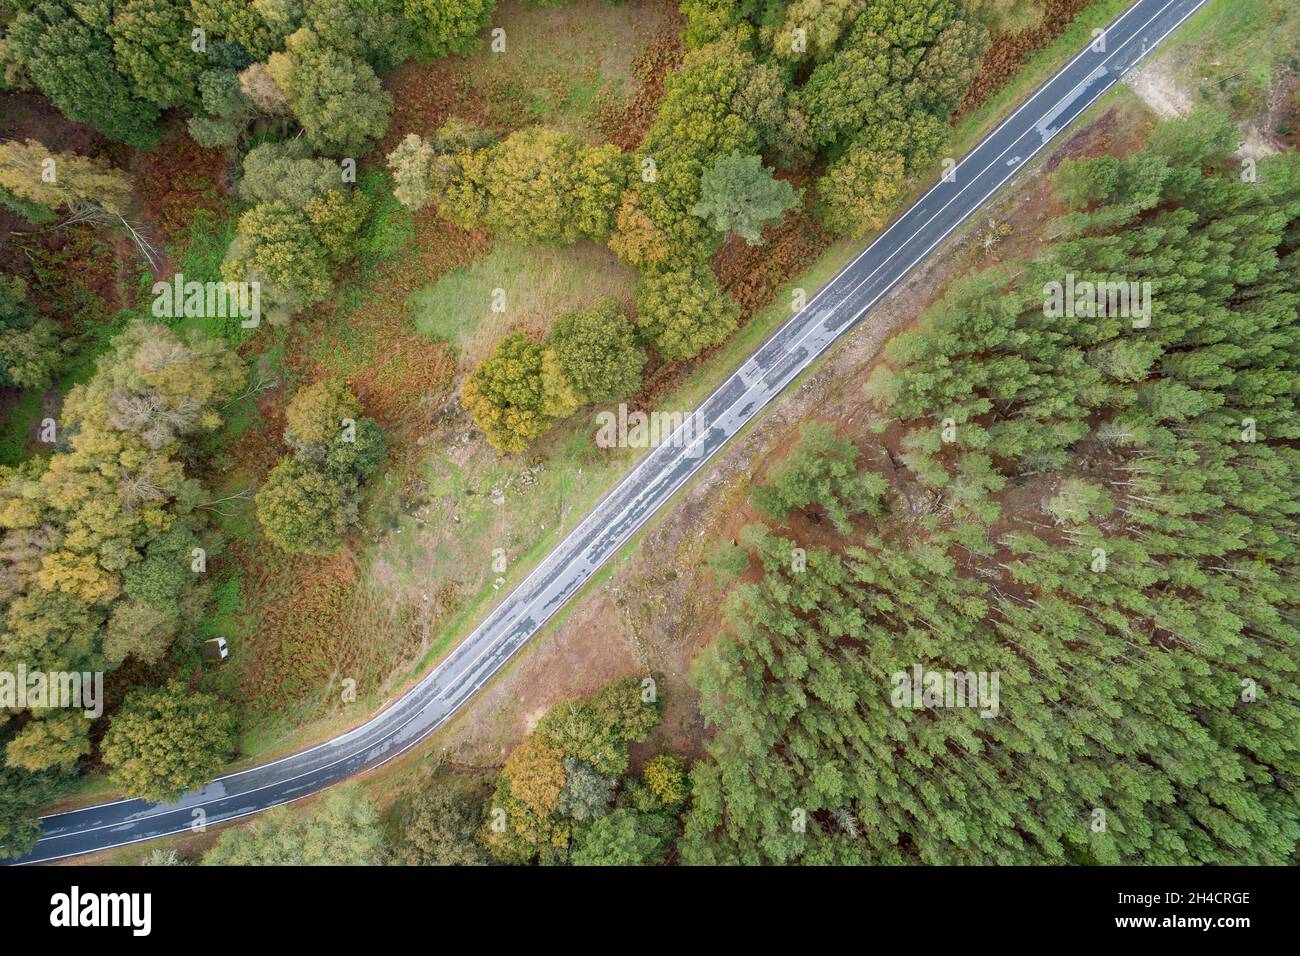 Vista de drone. Vista aérea cenit de una carretera de montaña con un bosque de pinos en un lado y un bosque de robles en el otro lado. Foto de stock